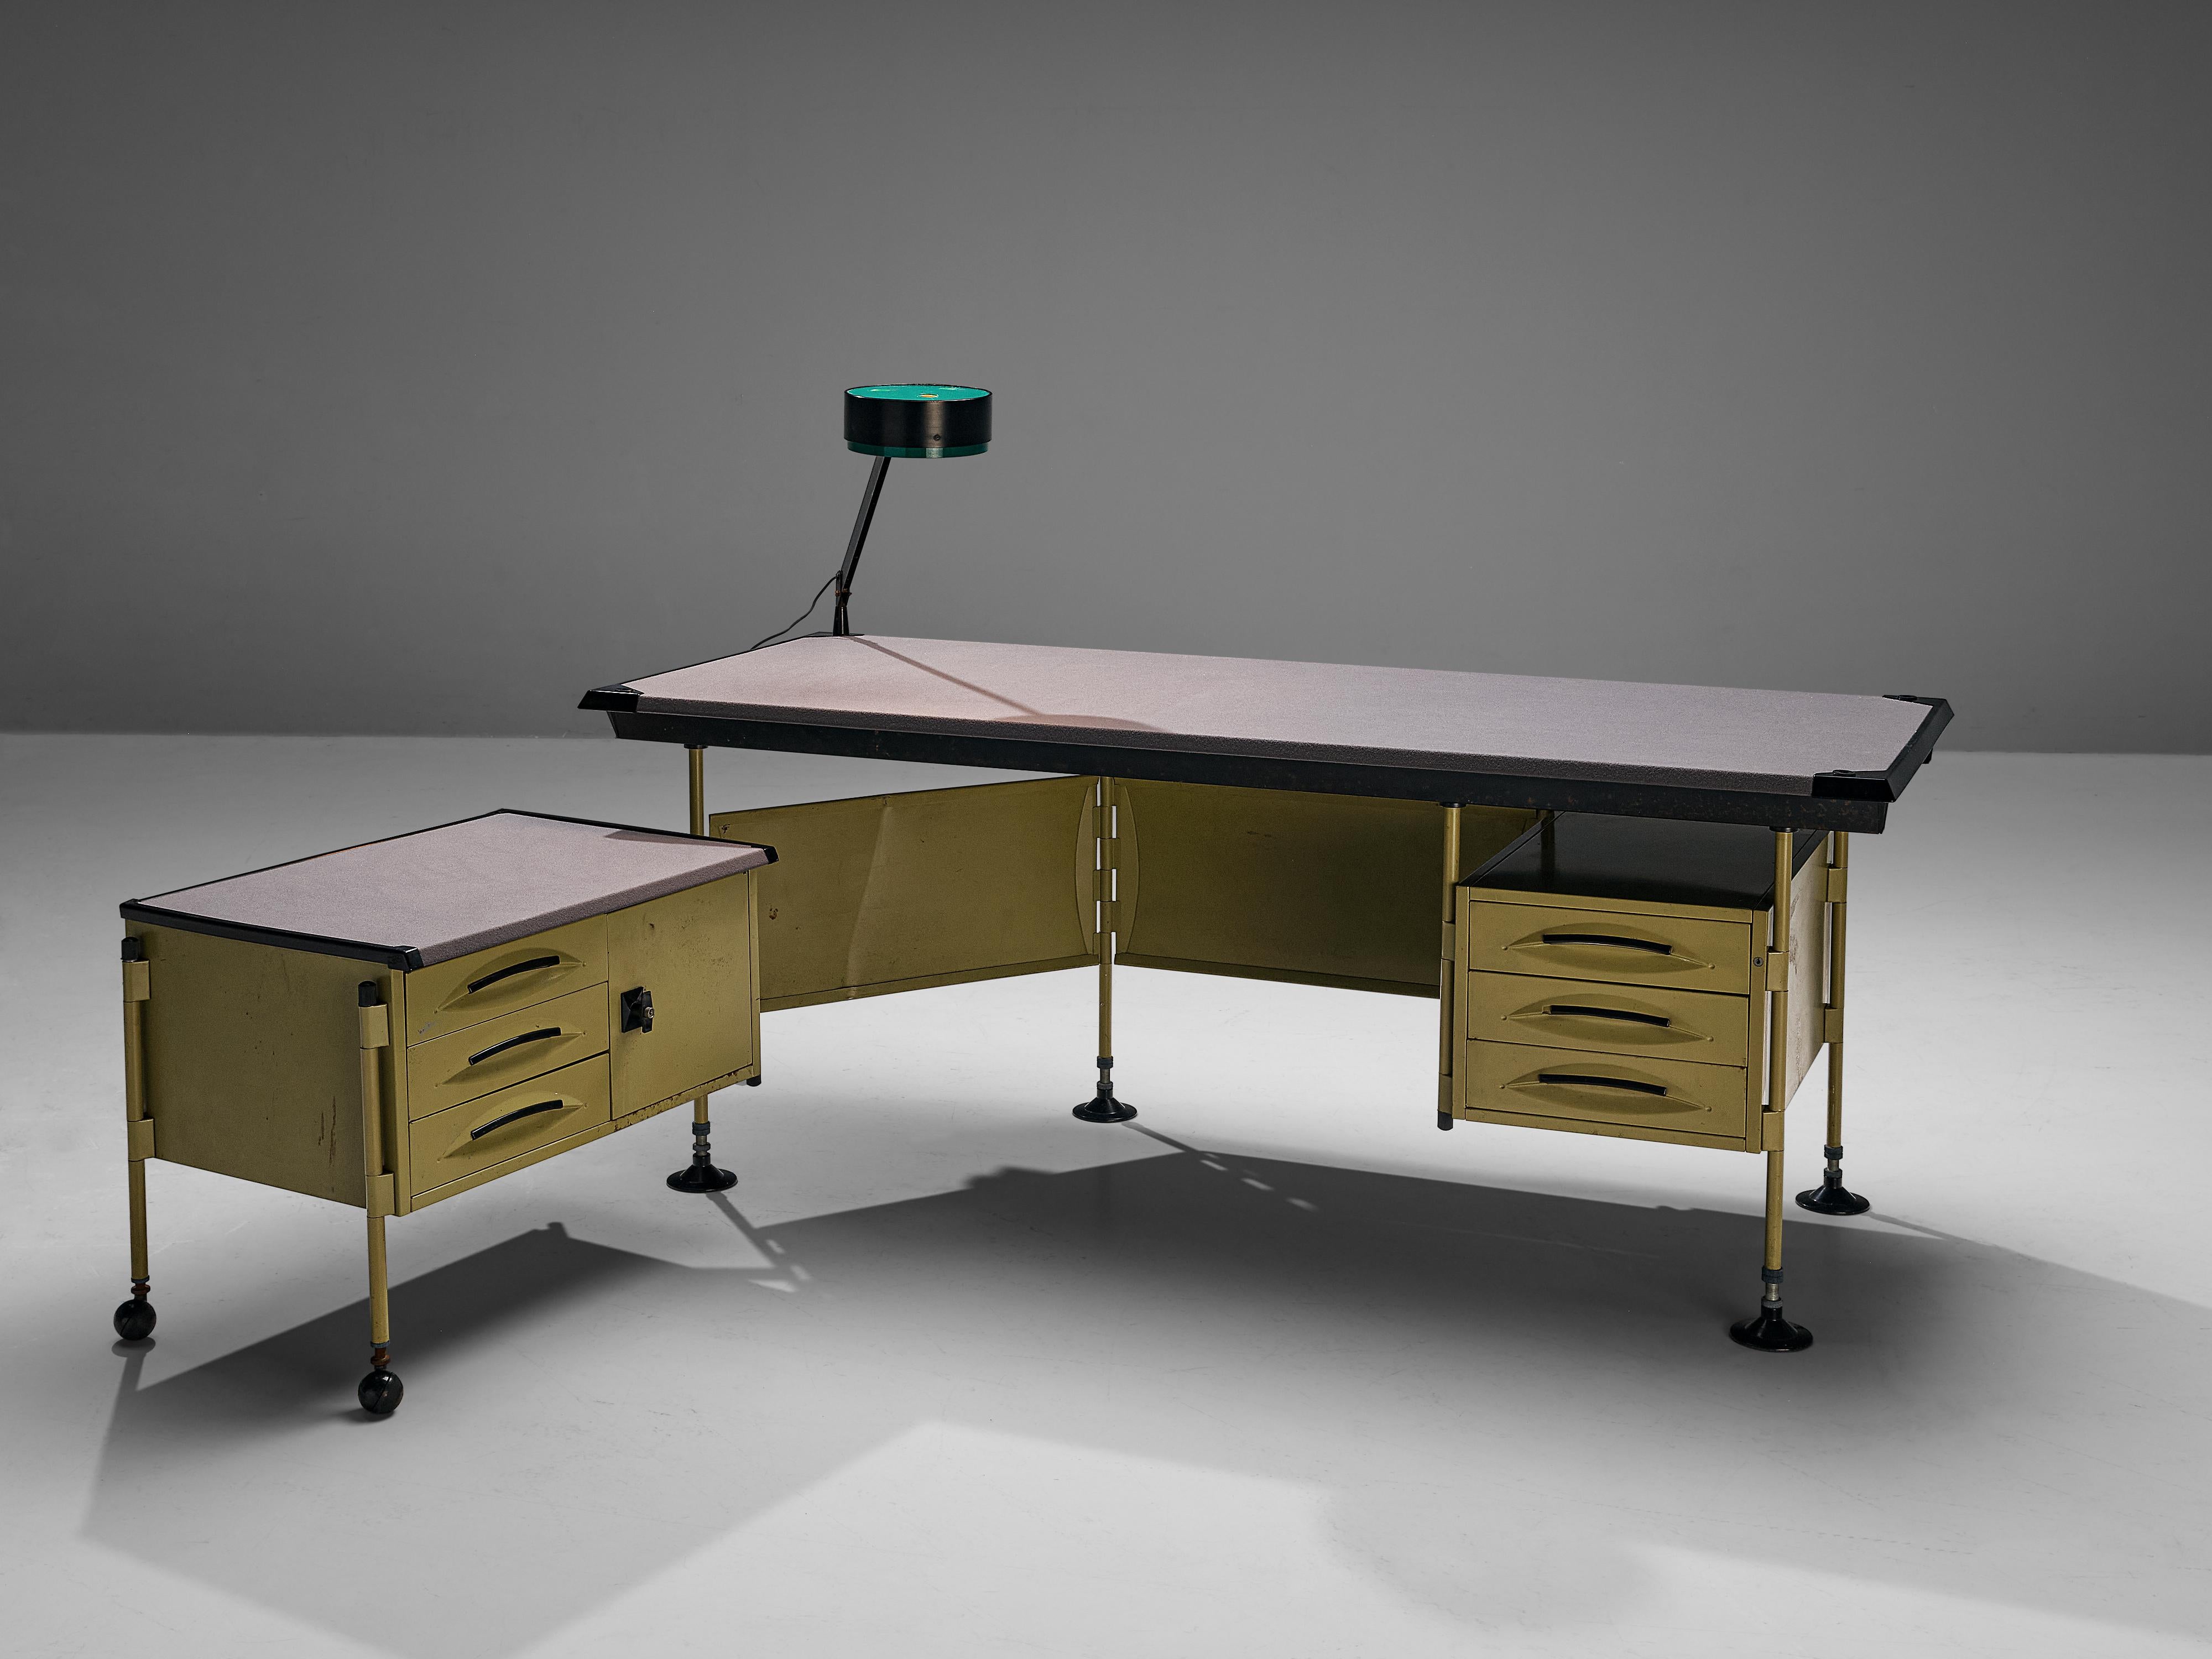 Studio BBPR for Olivetti, 'Spazio' desk with lamp, metal, vinyl, plastic, Italy, ca. 1960

The 'Spazio' series was designed by Studio BBPR for Olivetti in 1960. It won the Compasso d'Oro Award in 1962. Today the desk of the 'Spazio' series is